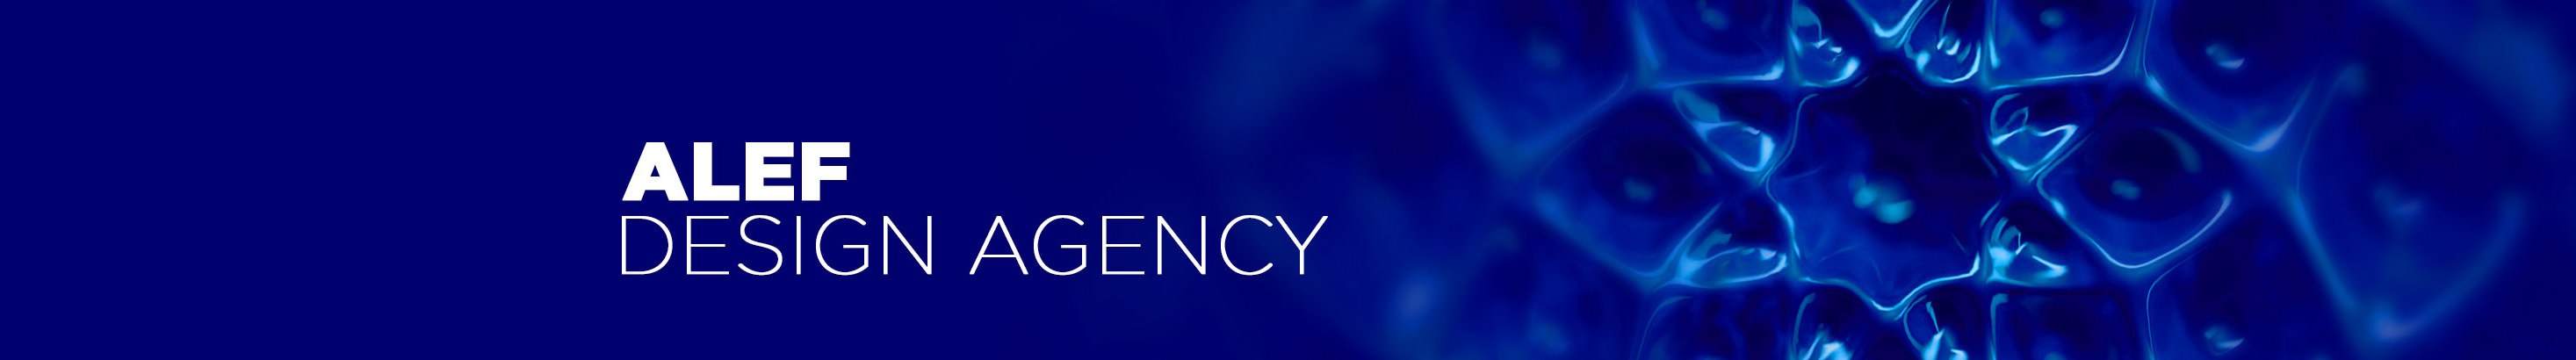 Banner de perfil de Alef Design Agency